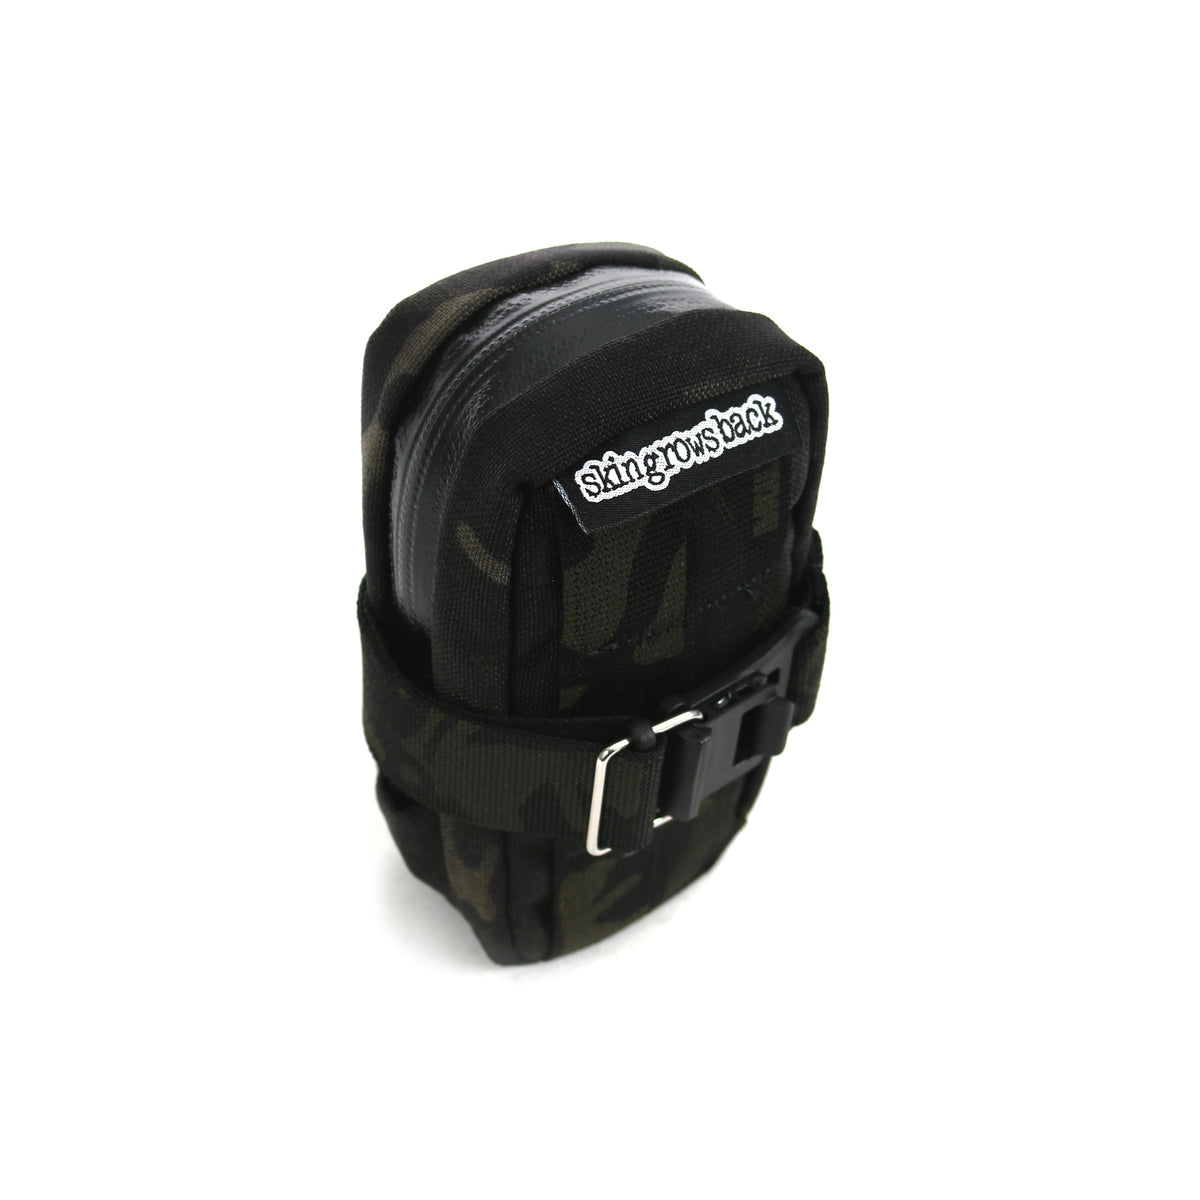 skingrowsback plan b cycling saddle bag MultiCam Black